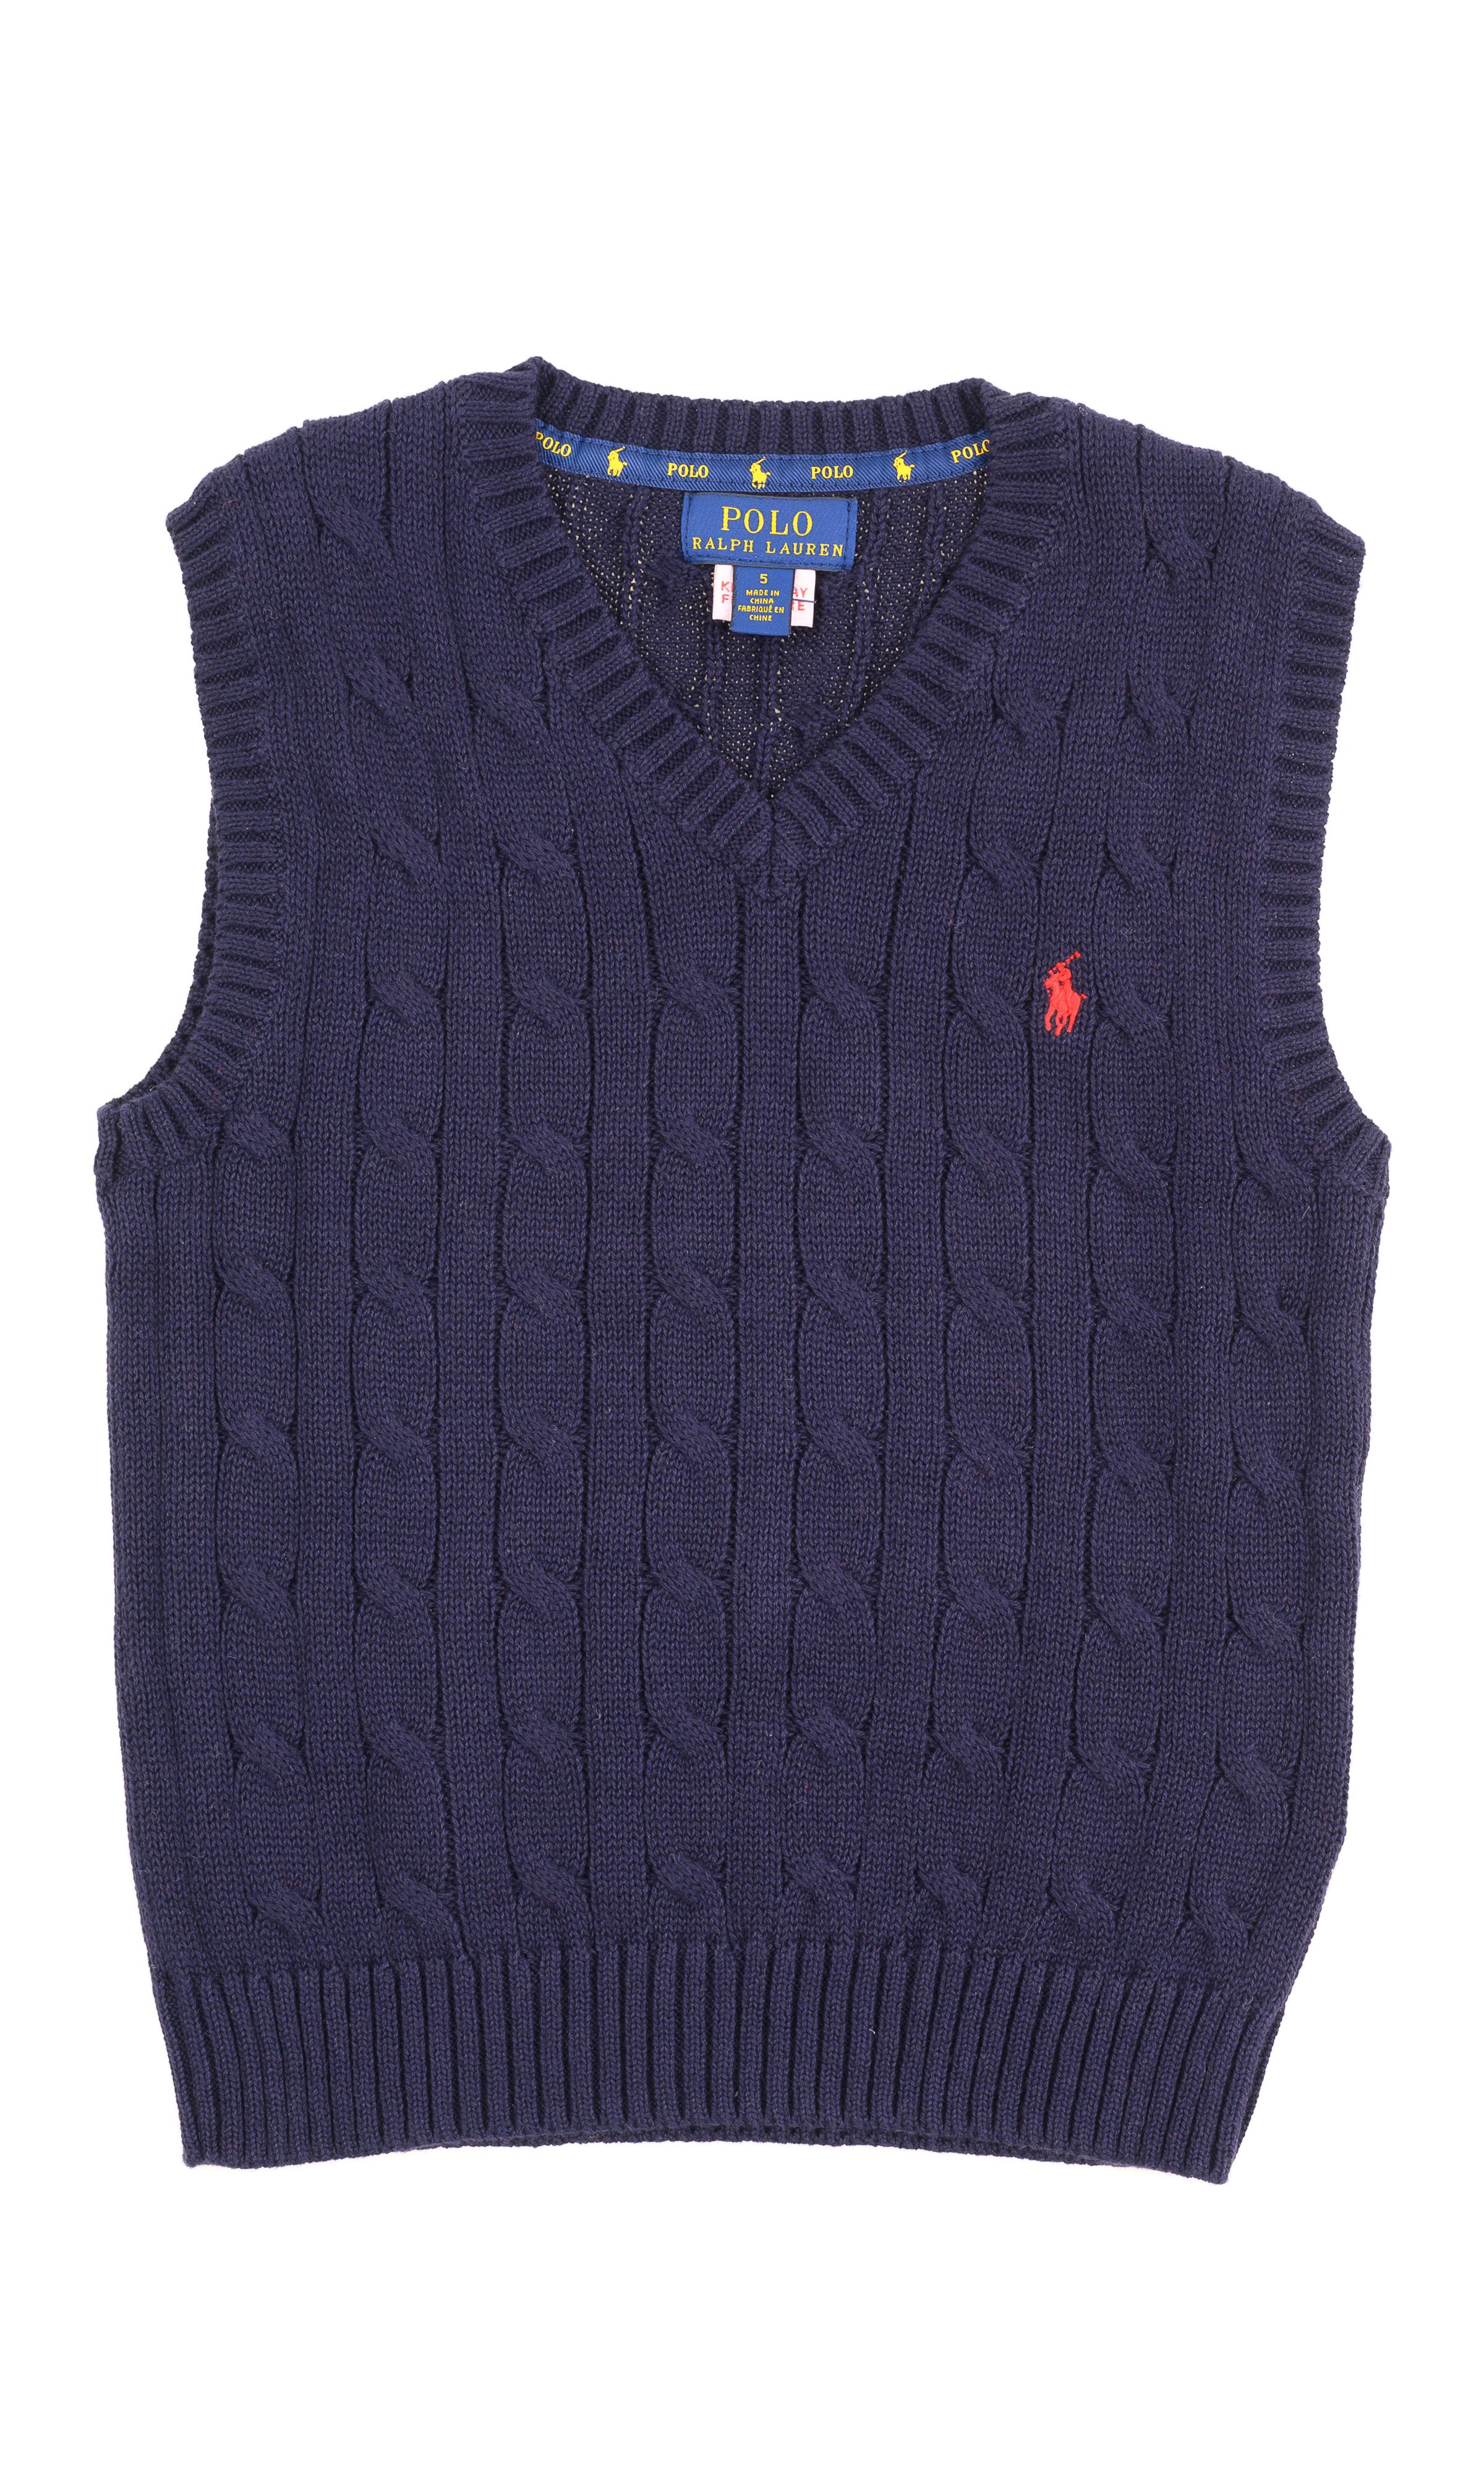 polo ralph lauren navy blue sweater